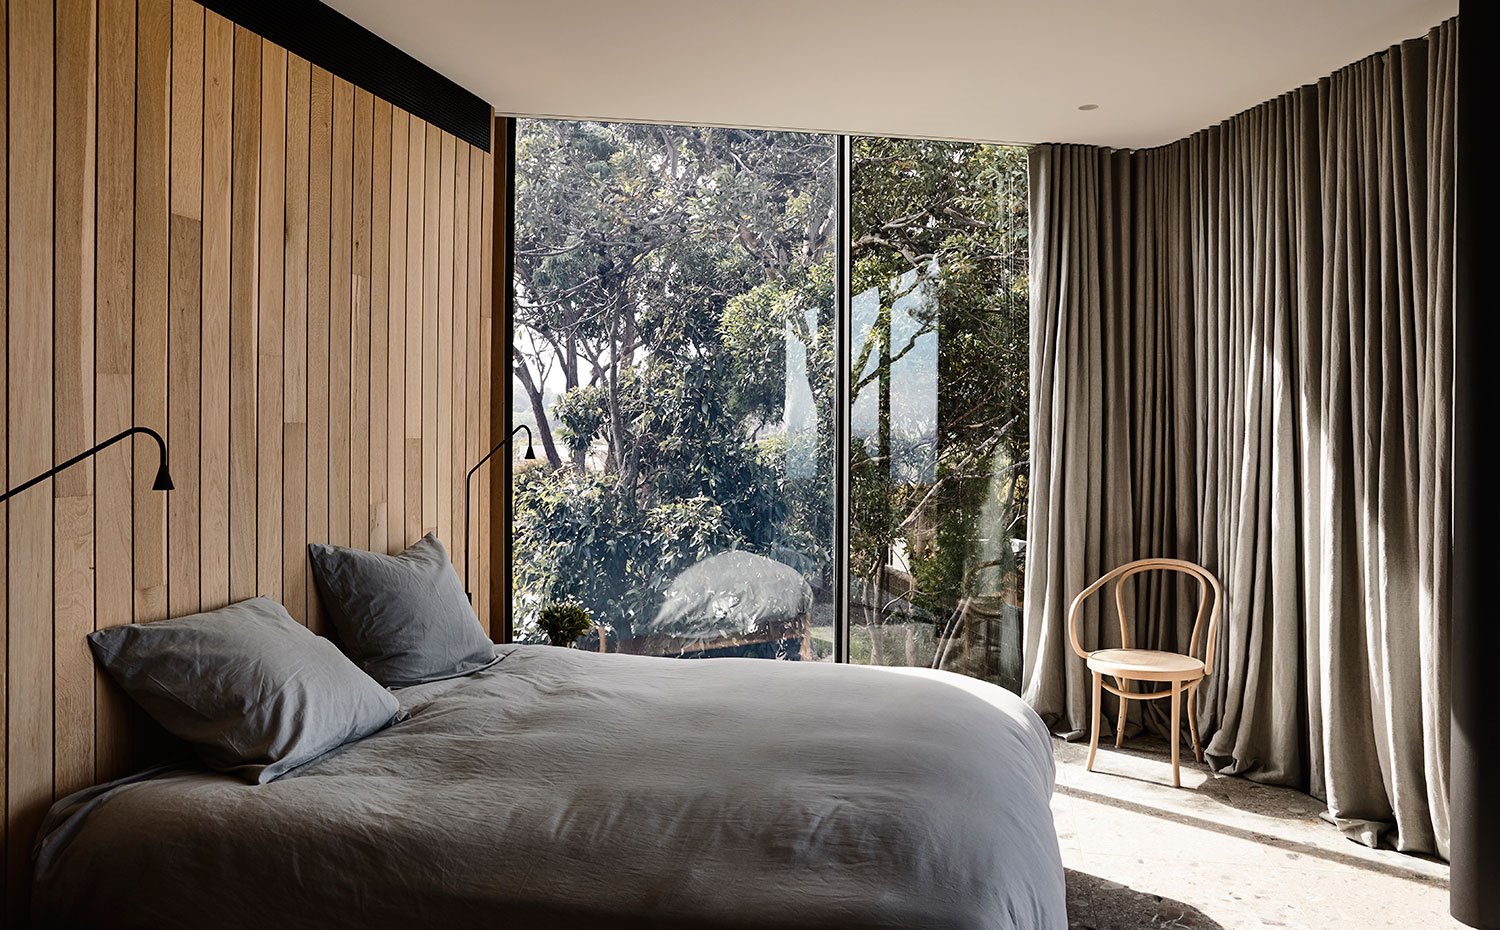 Dormitorio con cerramientos transparentes al exterior y cortinas en gris para aislar del exterior